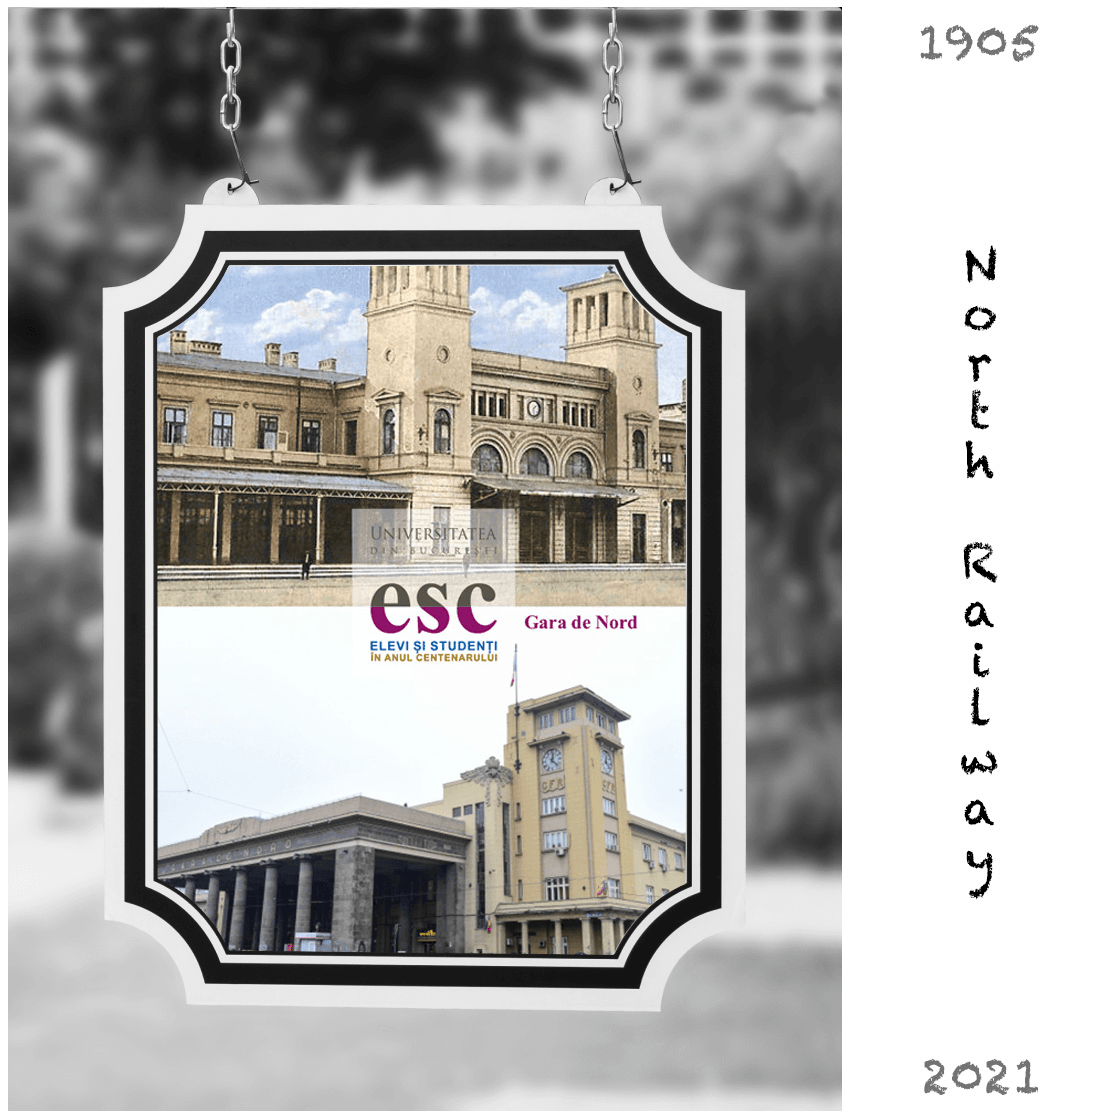 Bucharest North Railway Station - 1900 - 2019